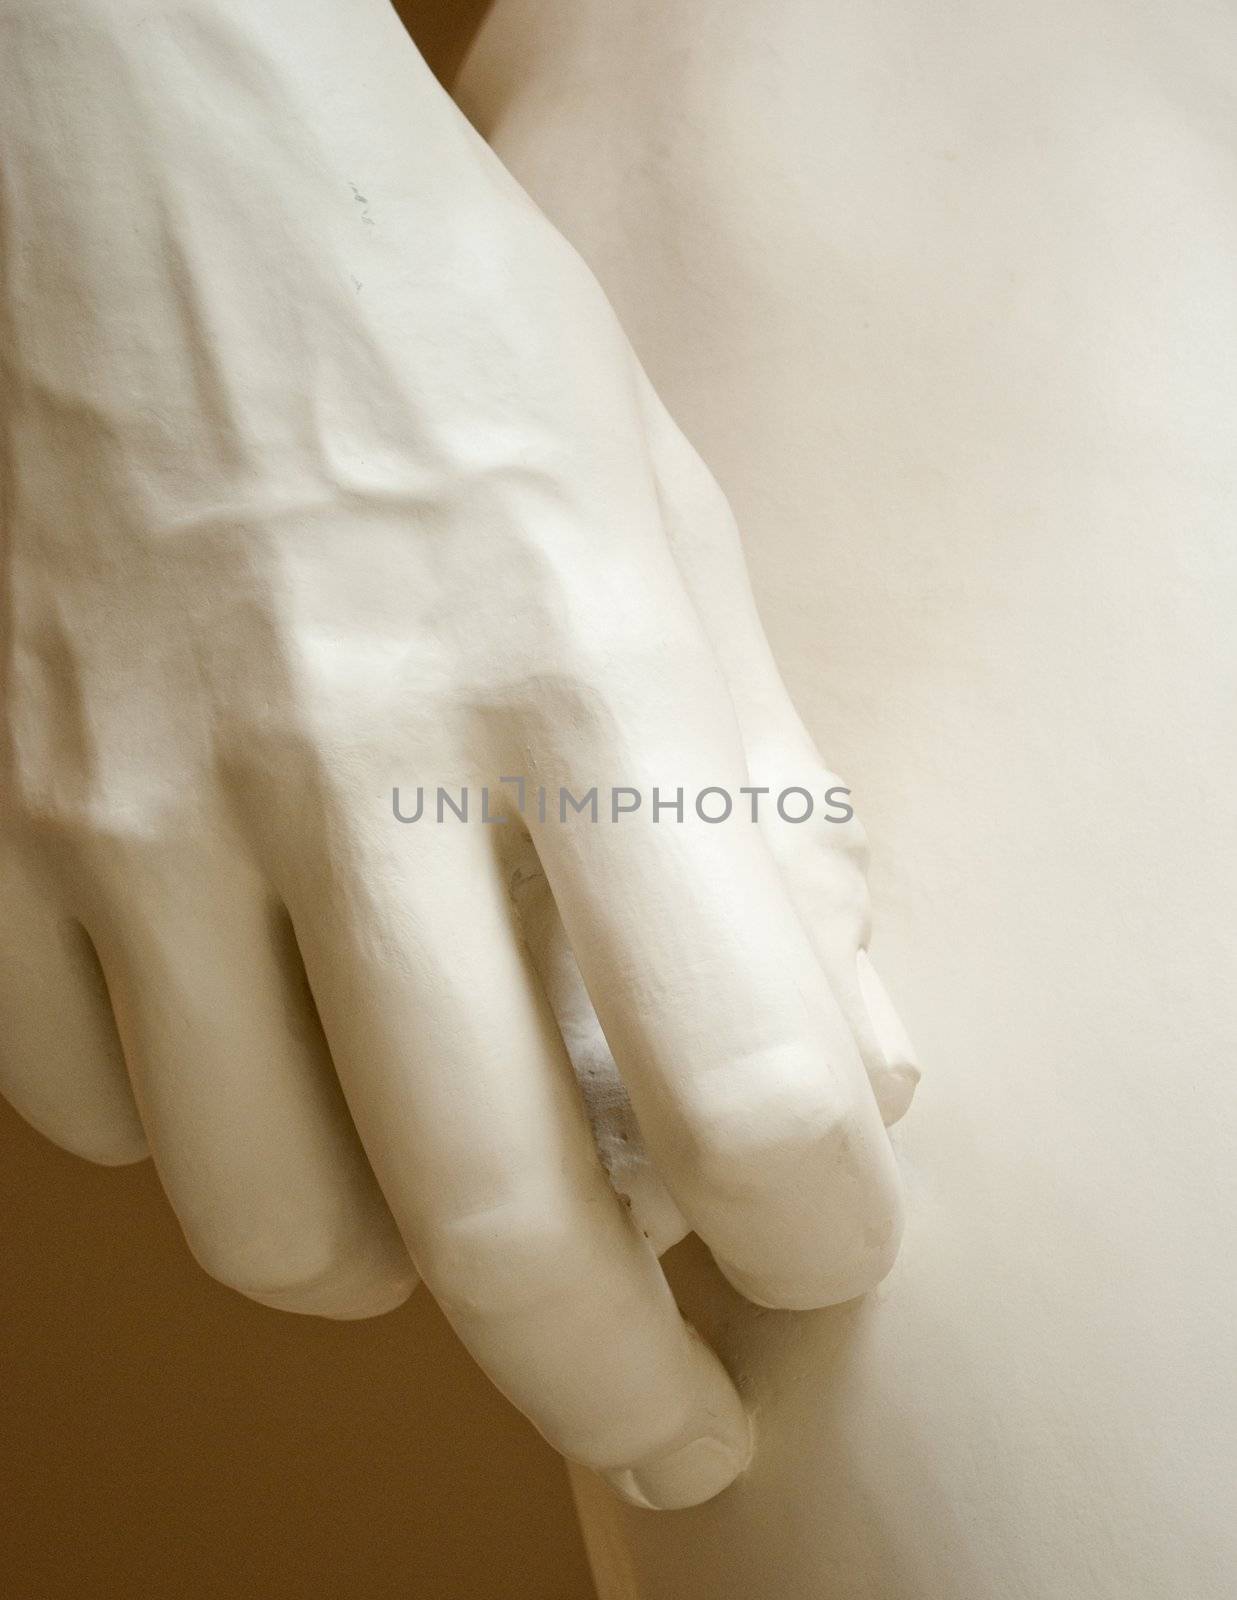 Hands statue